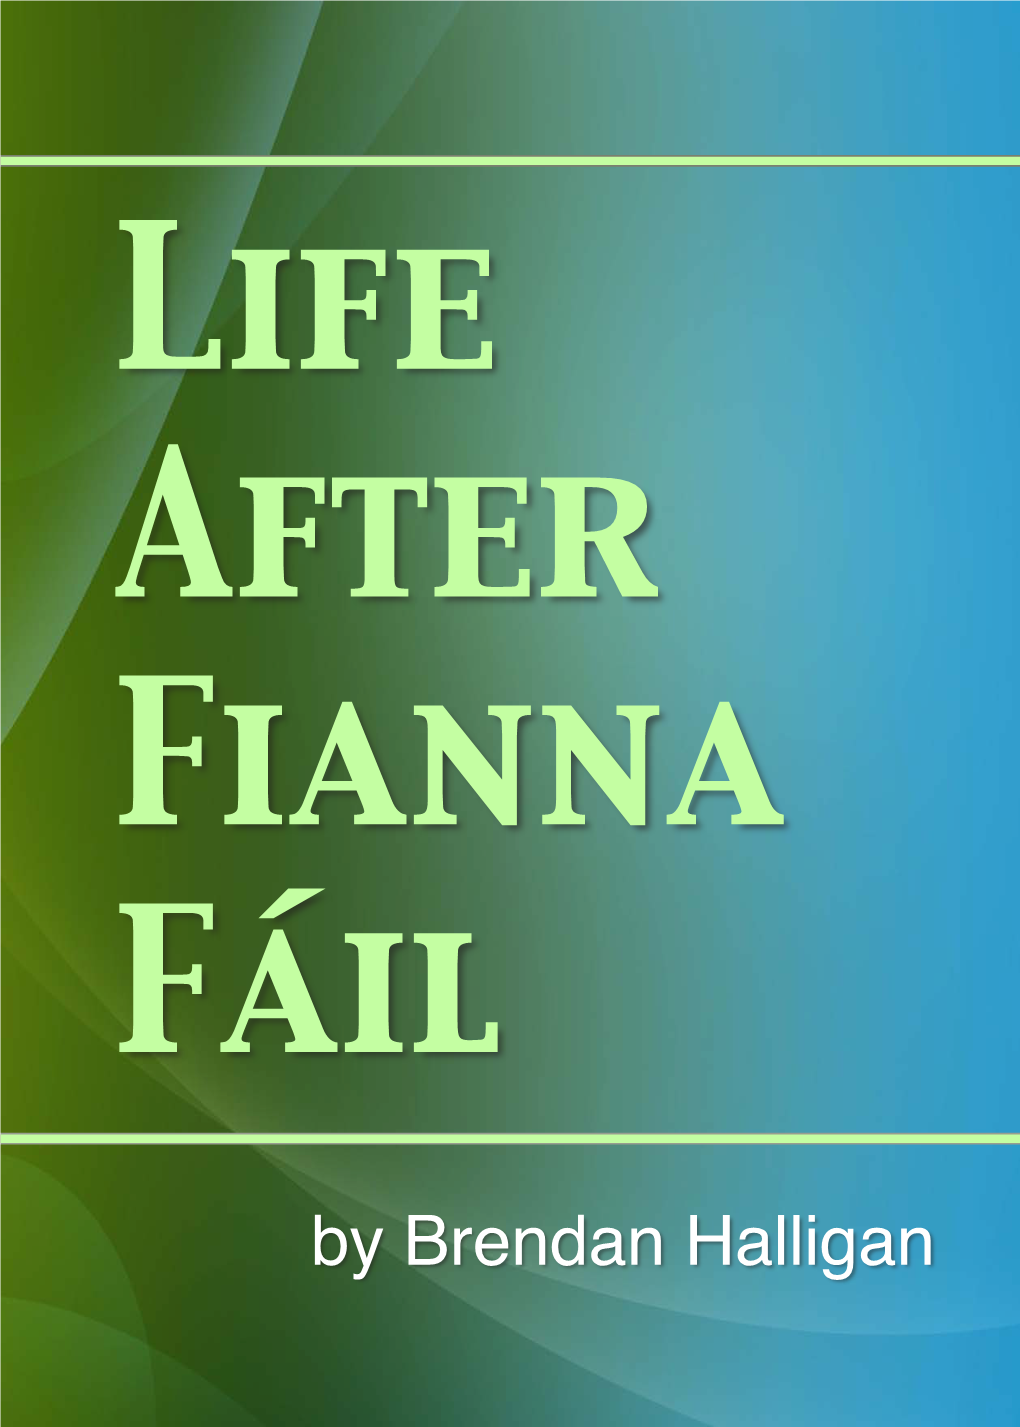 Life After Fianna Fáil